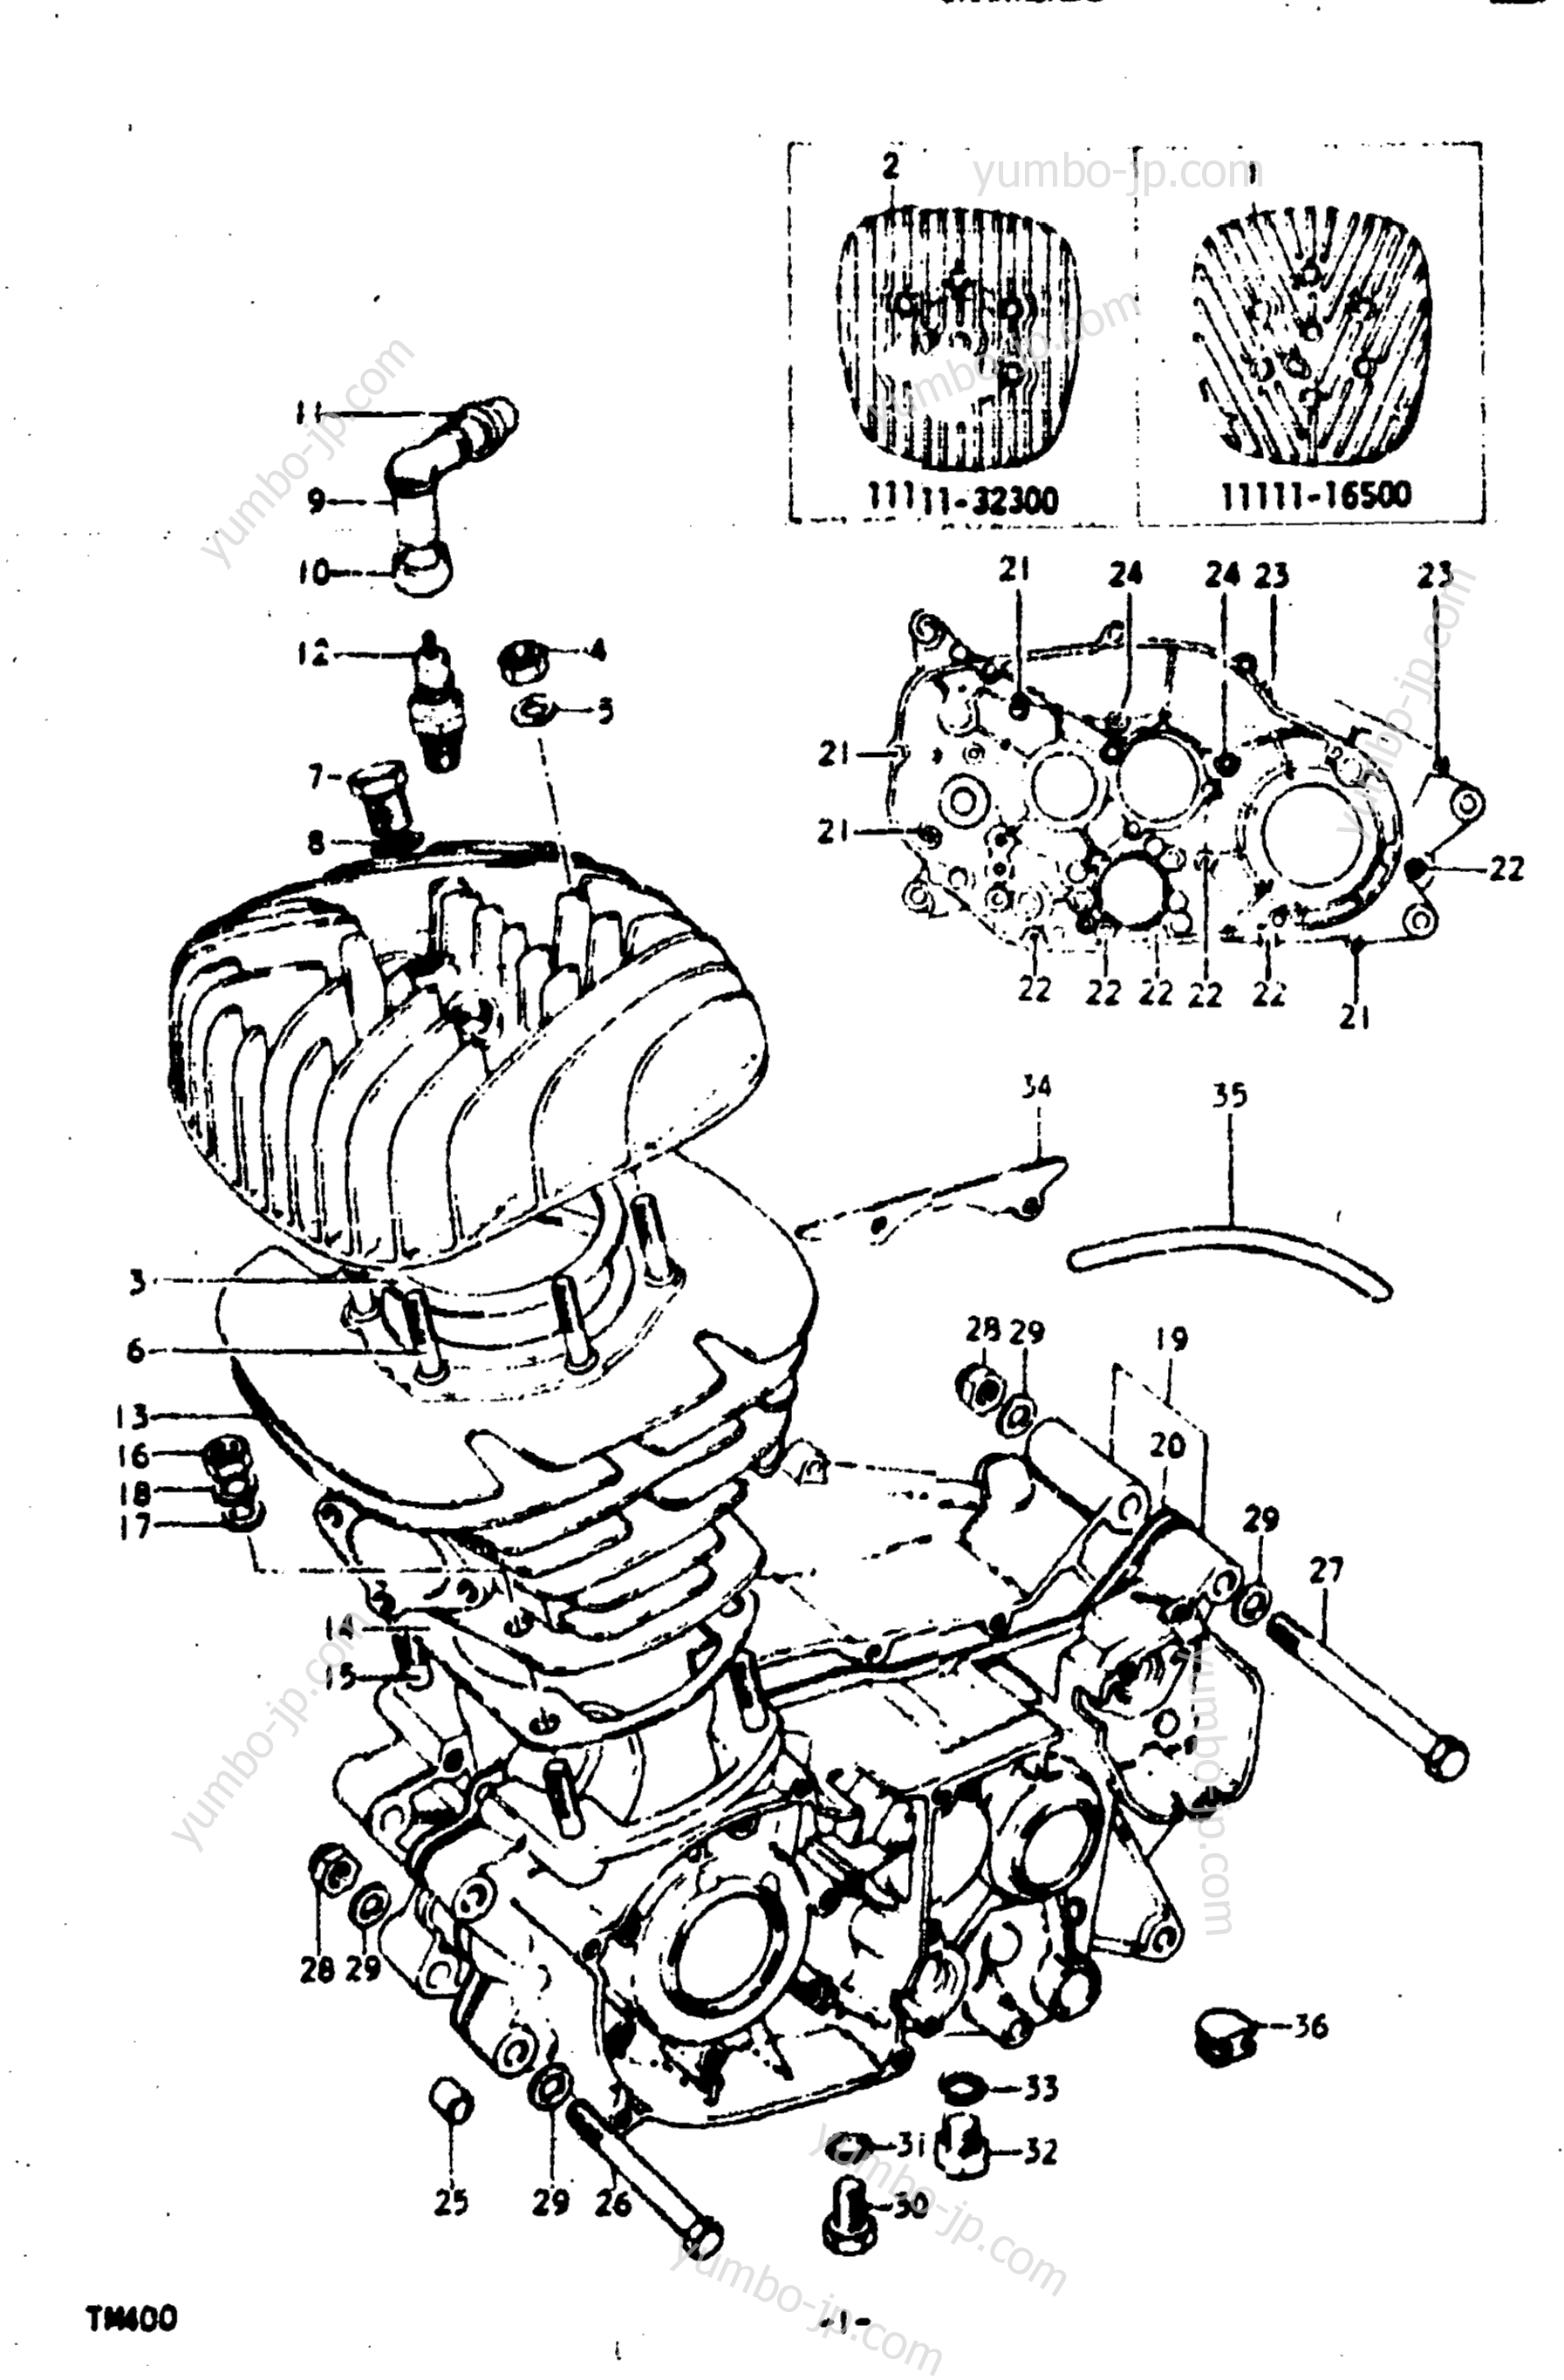 Cylinder - Crankcase for motorcycles SUZUKI TM400 1973 year